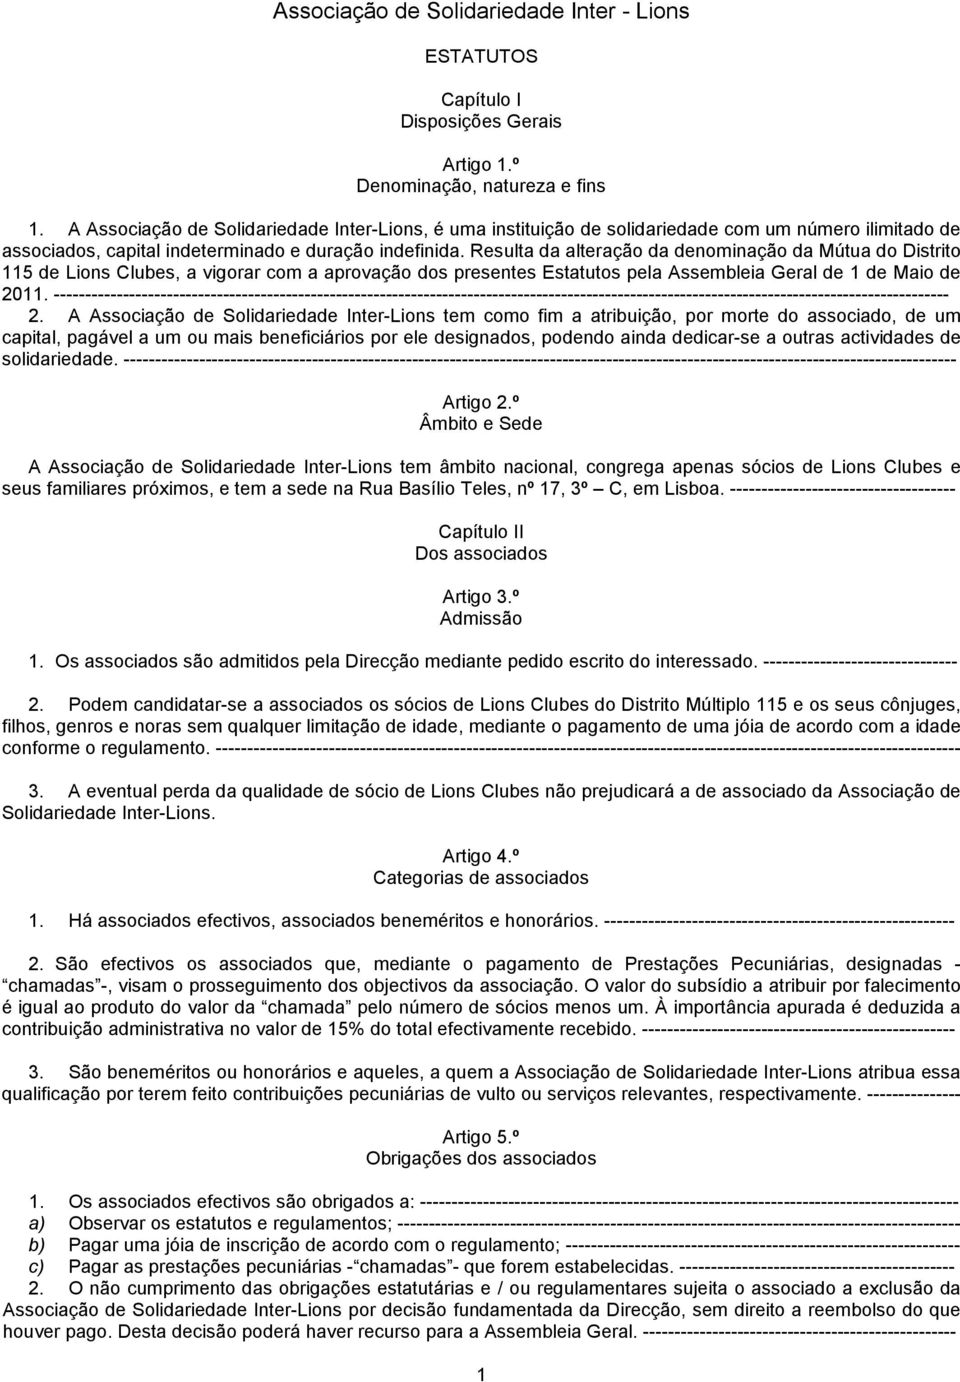 Resulta da alteração da denominação da Mútua do Distrito 115 de Lions Clubes, a vigorar com a aprovação dos presentes Estatutos pela Assembleia Geral de 1 de Maio de 2011.